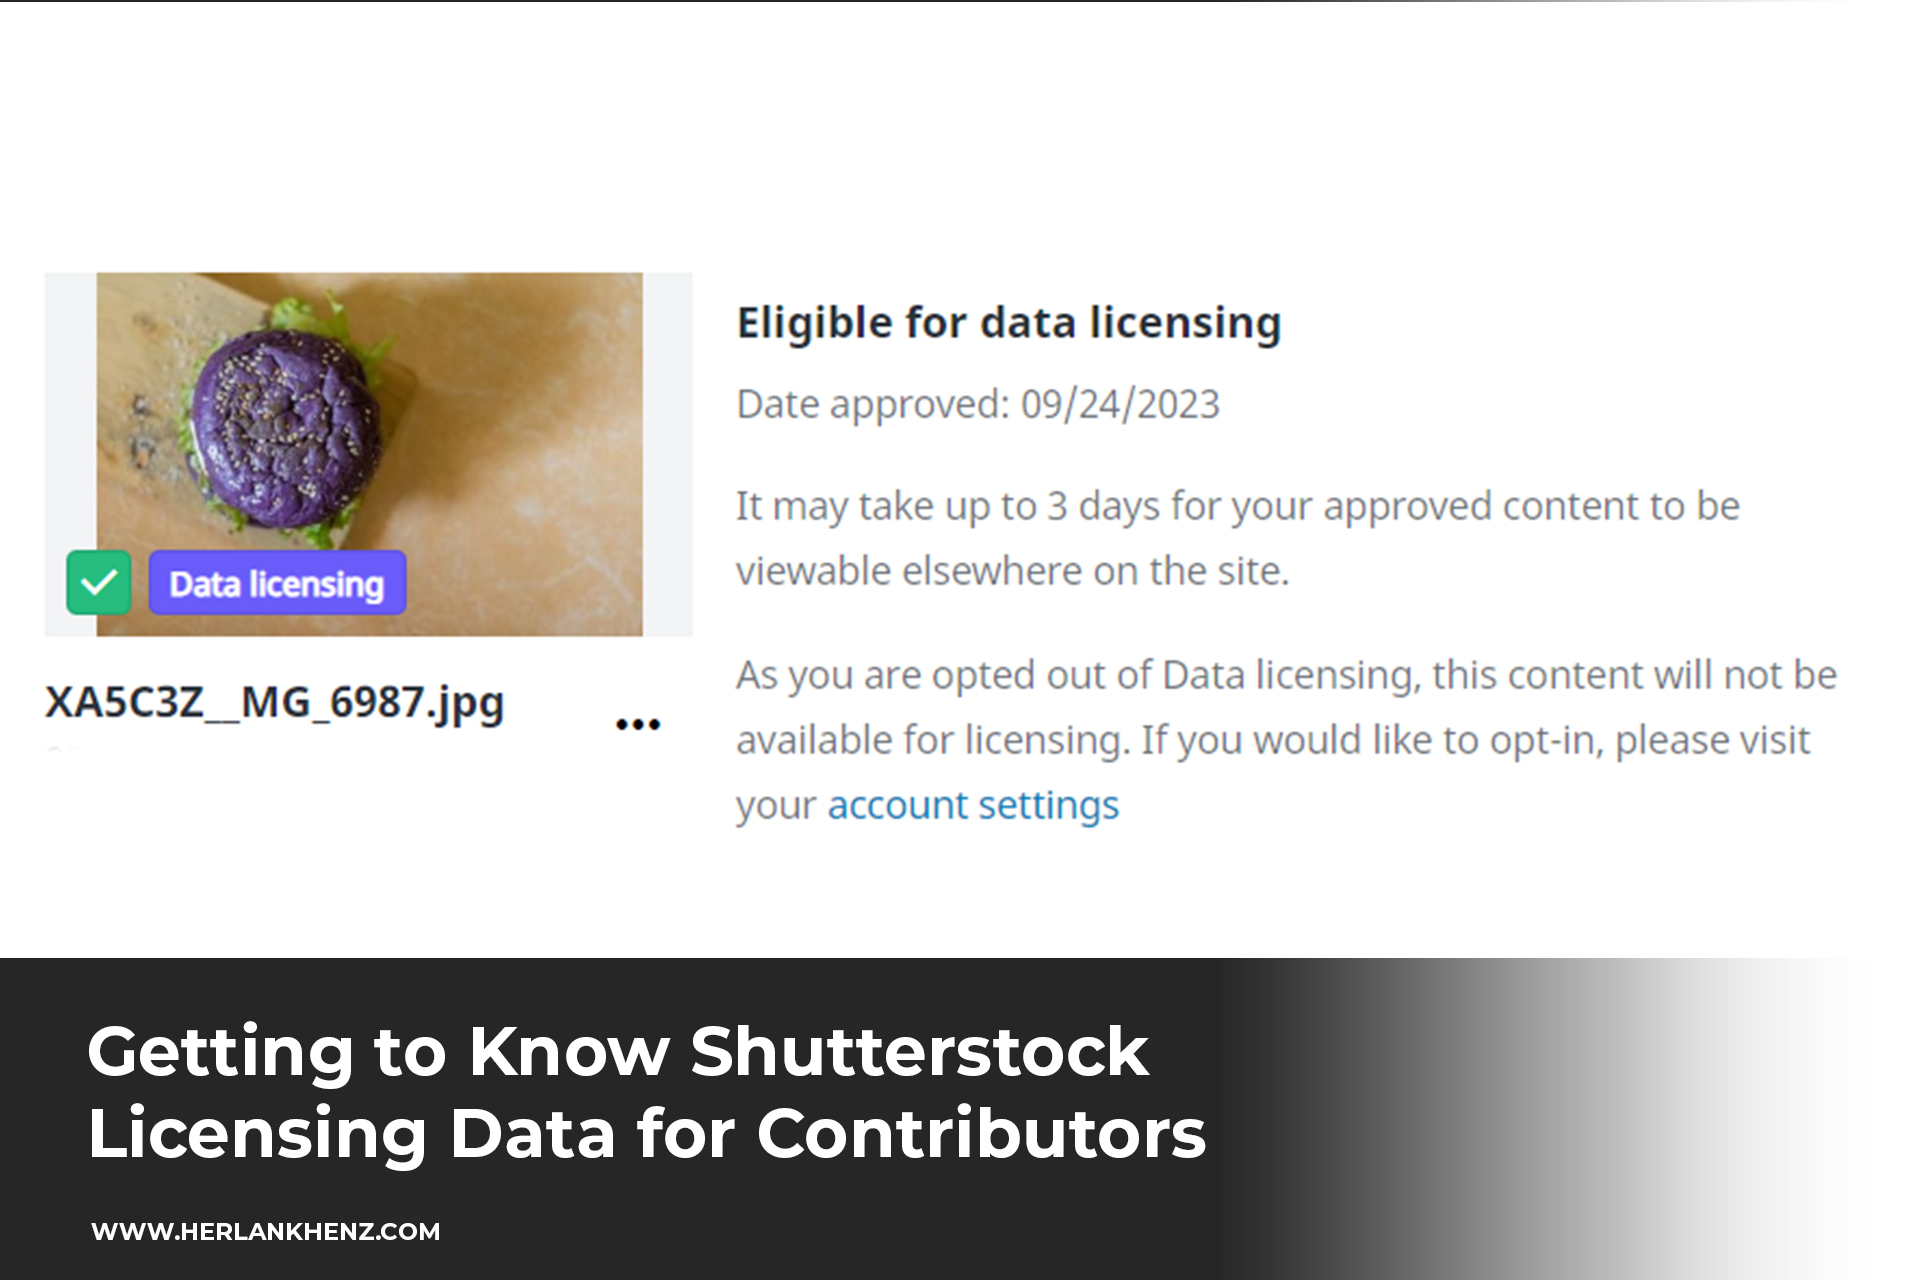 Mengenal Data Licensing Shutterstock untuk Kontributor